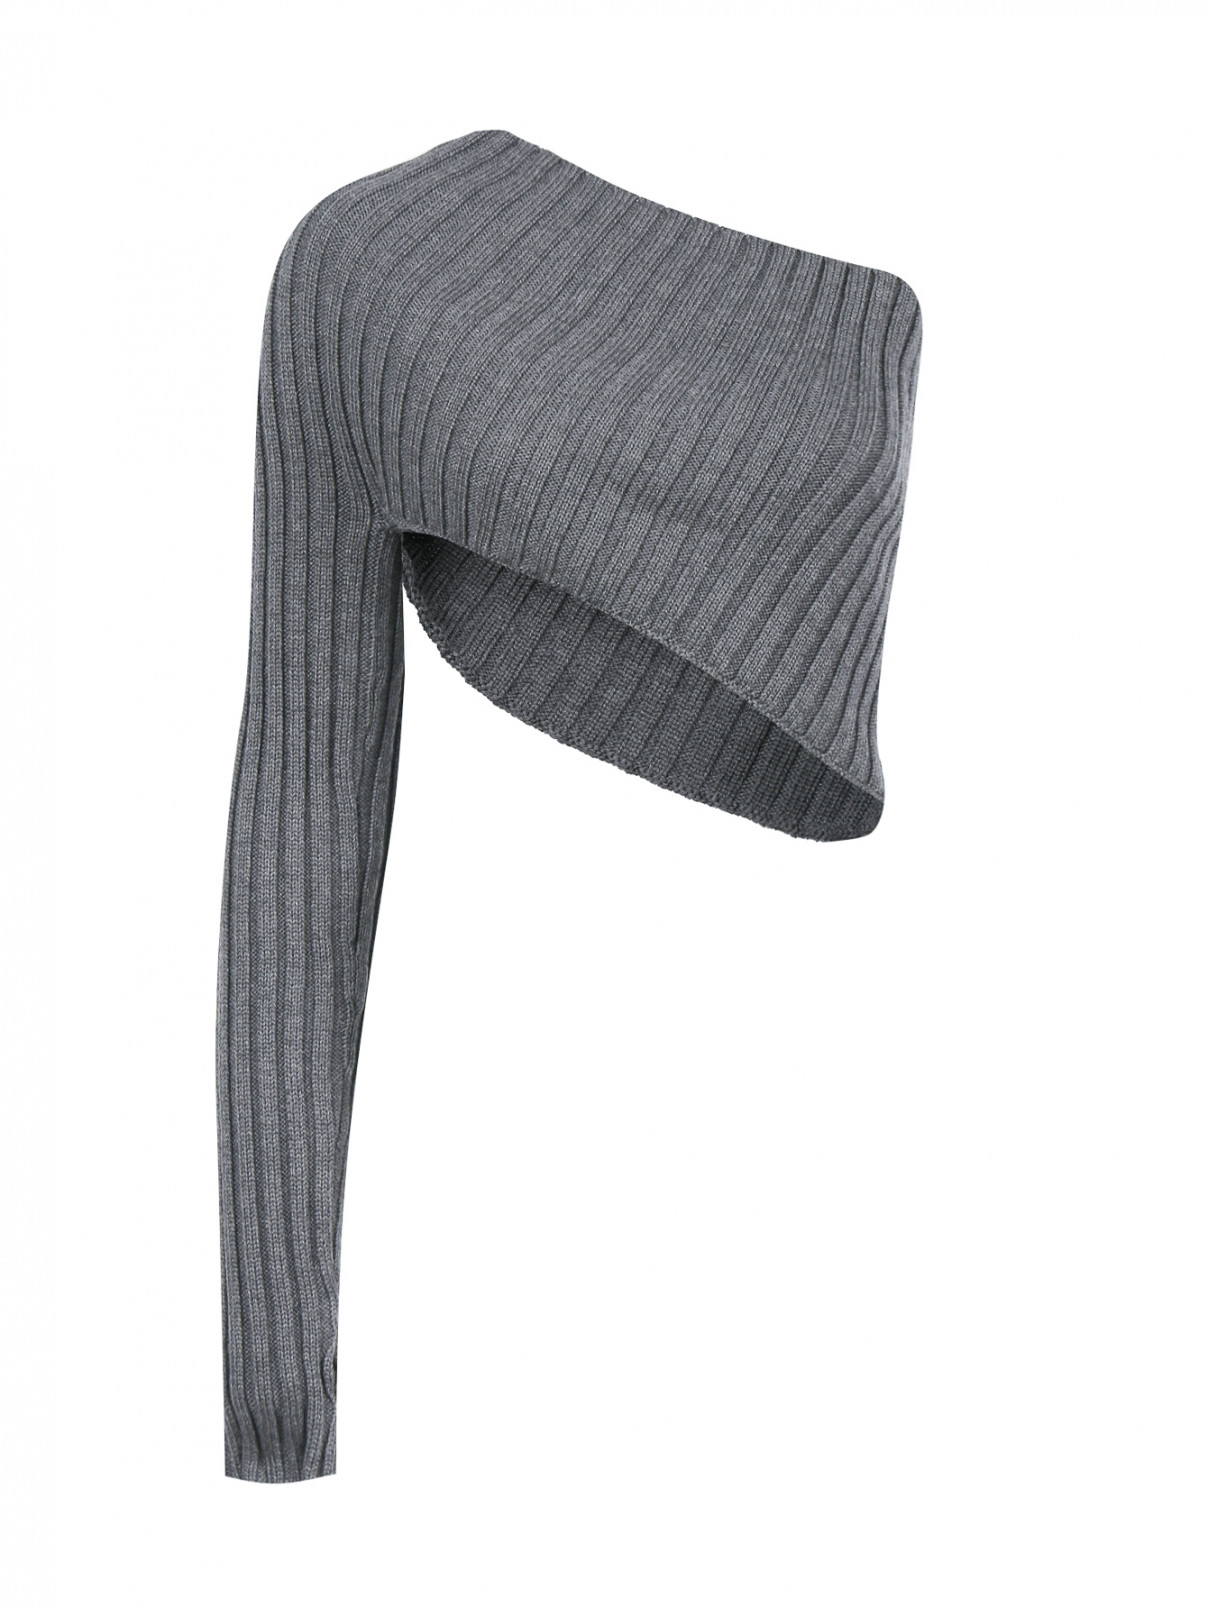 Укороченный джемпер из шерсти асимметричного кроя Jean Paul Gaultier  –  Общий вид  – Цвет:  Серый